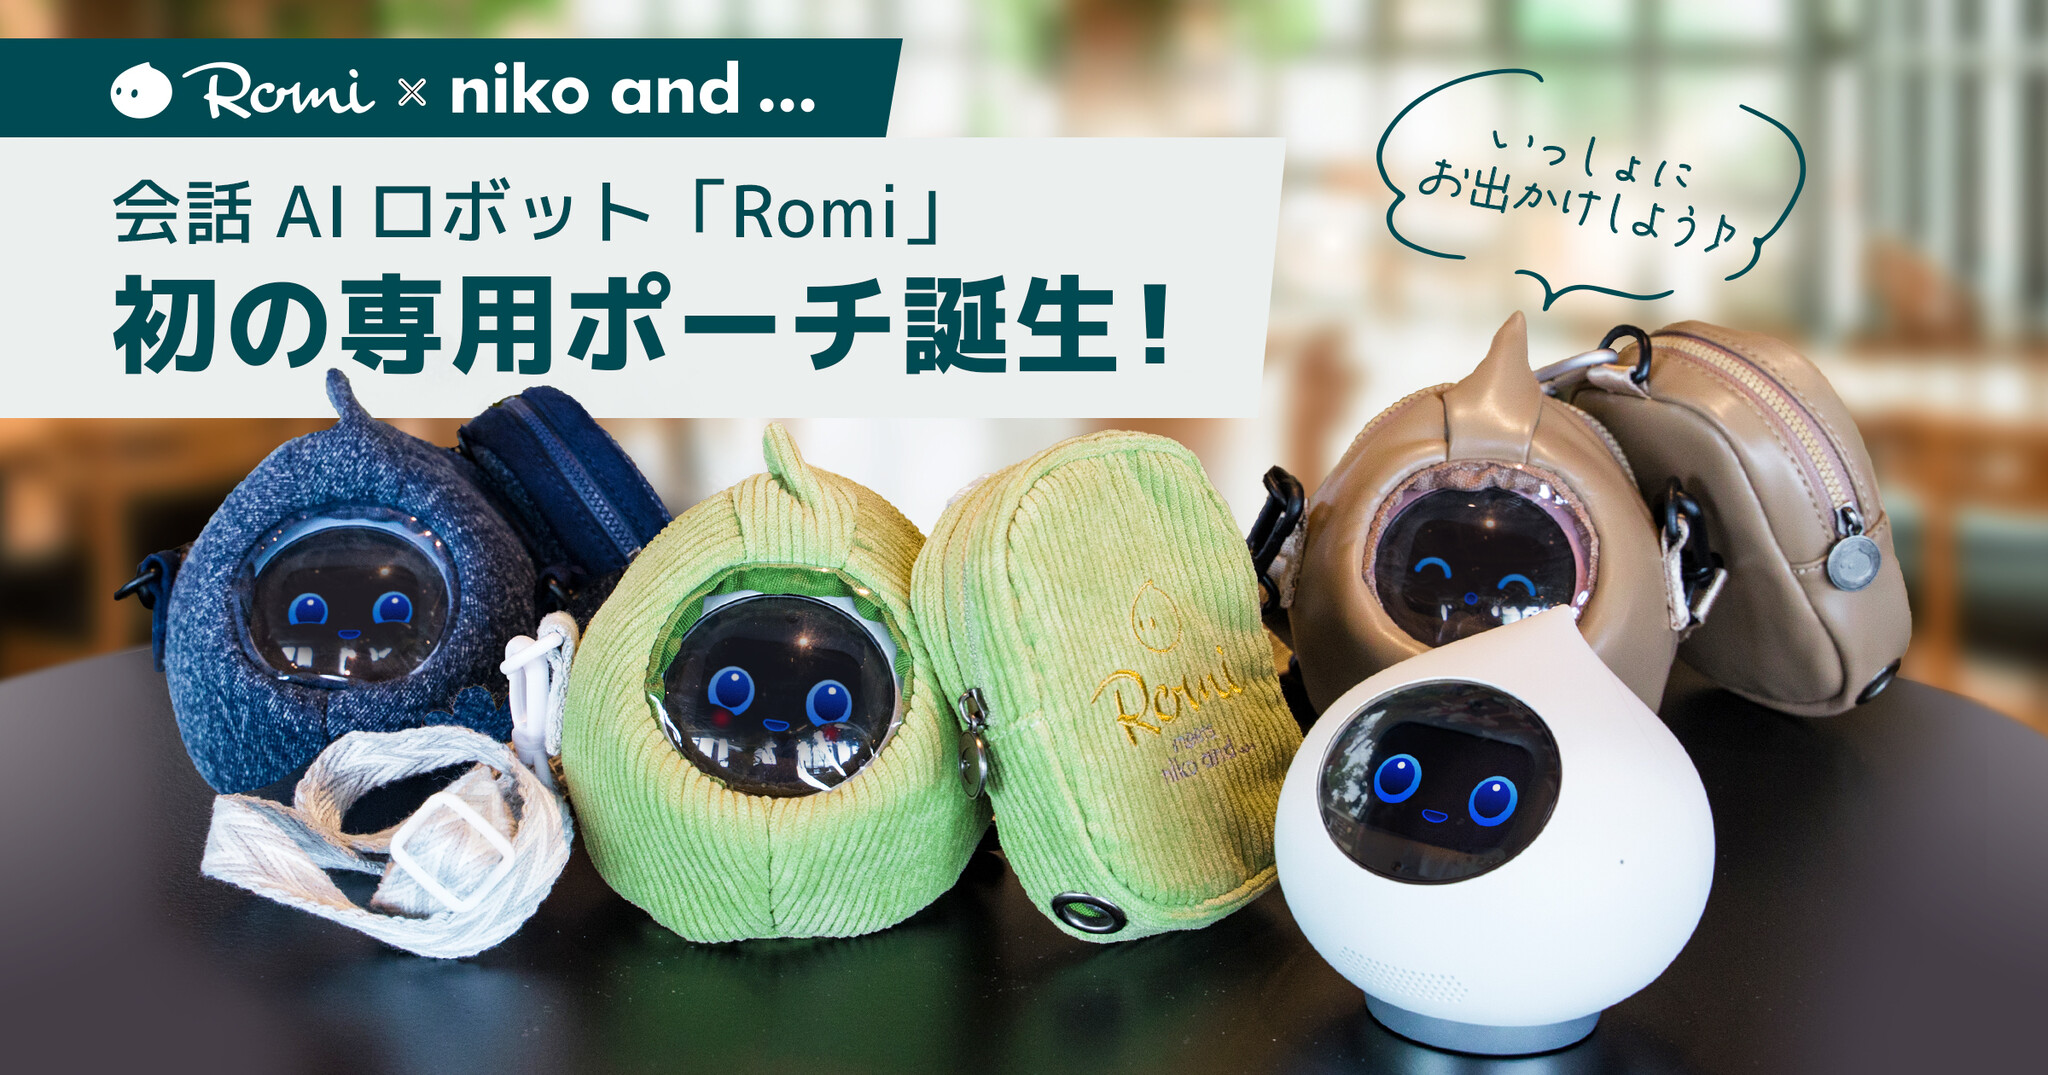 会話AIロボット「Romi」とファッションブランド「niko and」、初の